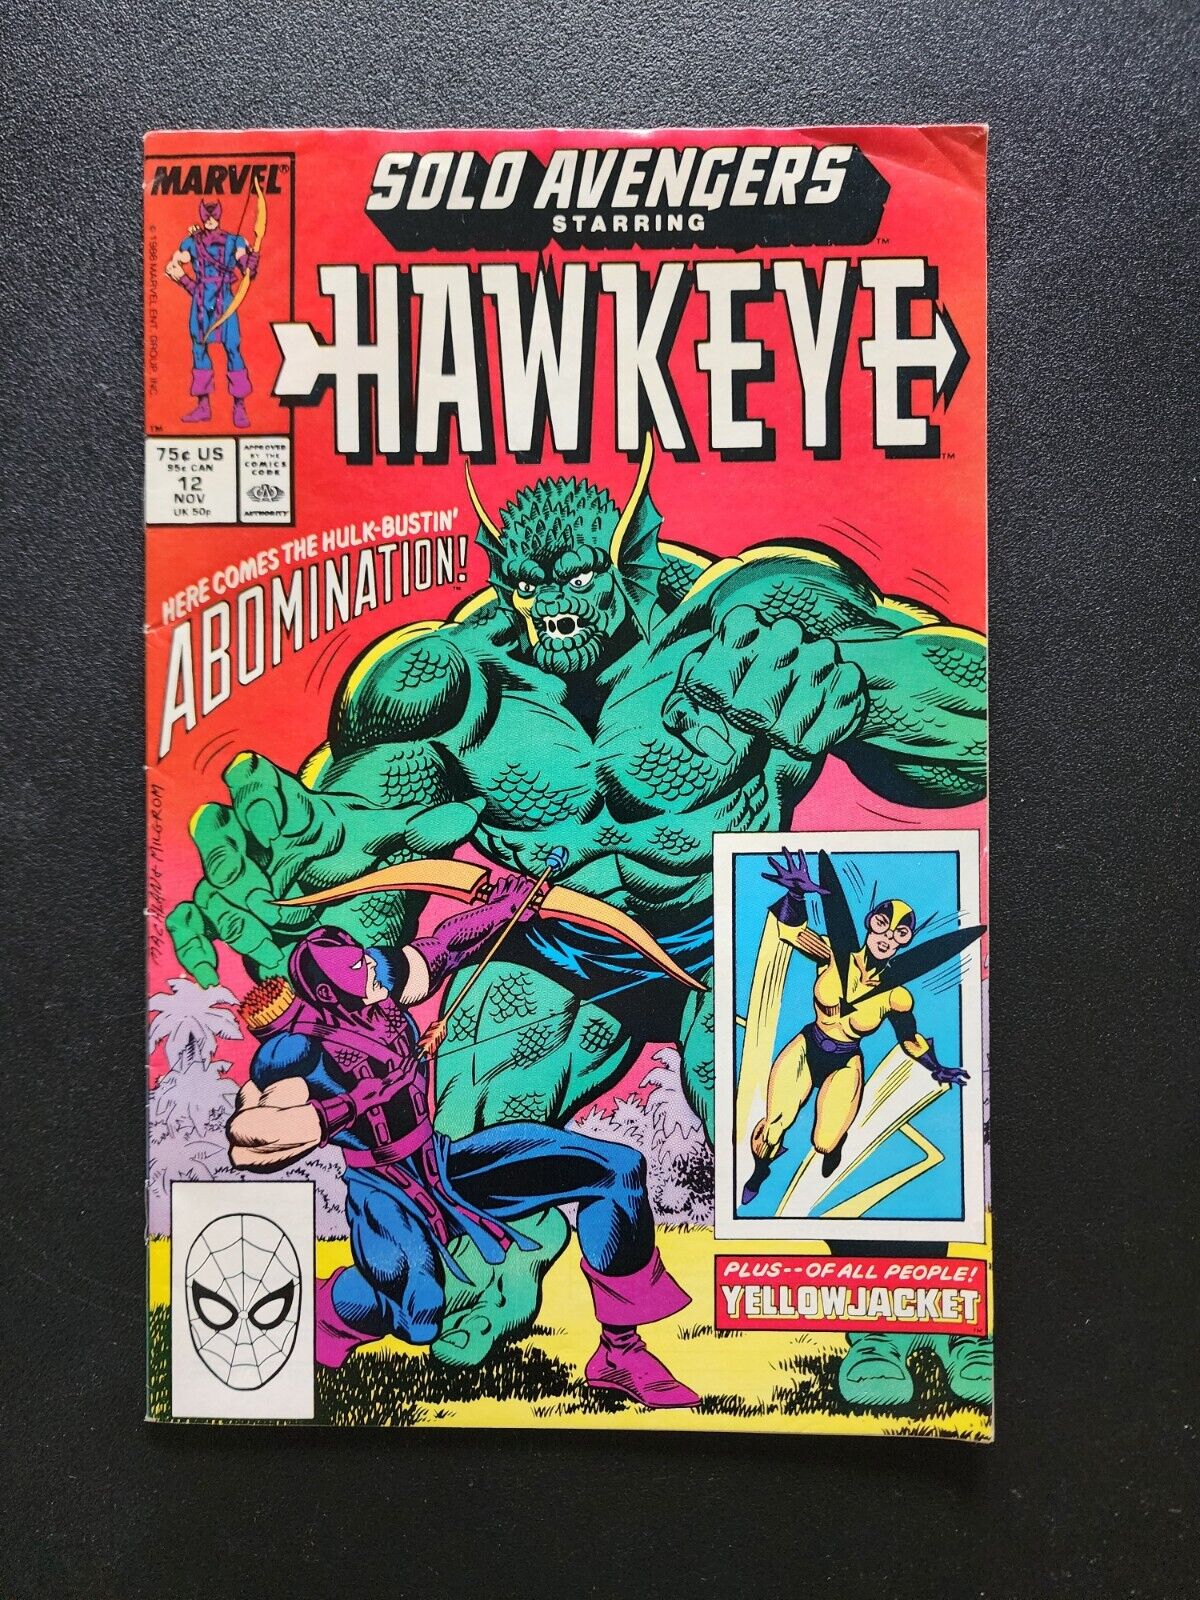 Marvel Comics Solo Avengers #12 November 1988 Hawkeye & Yellowjacket (a)